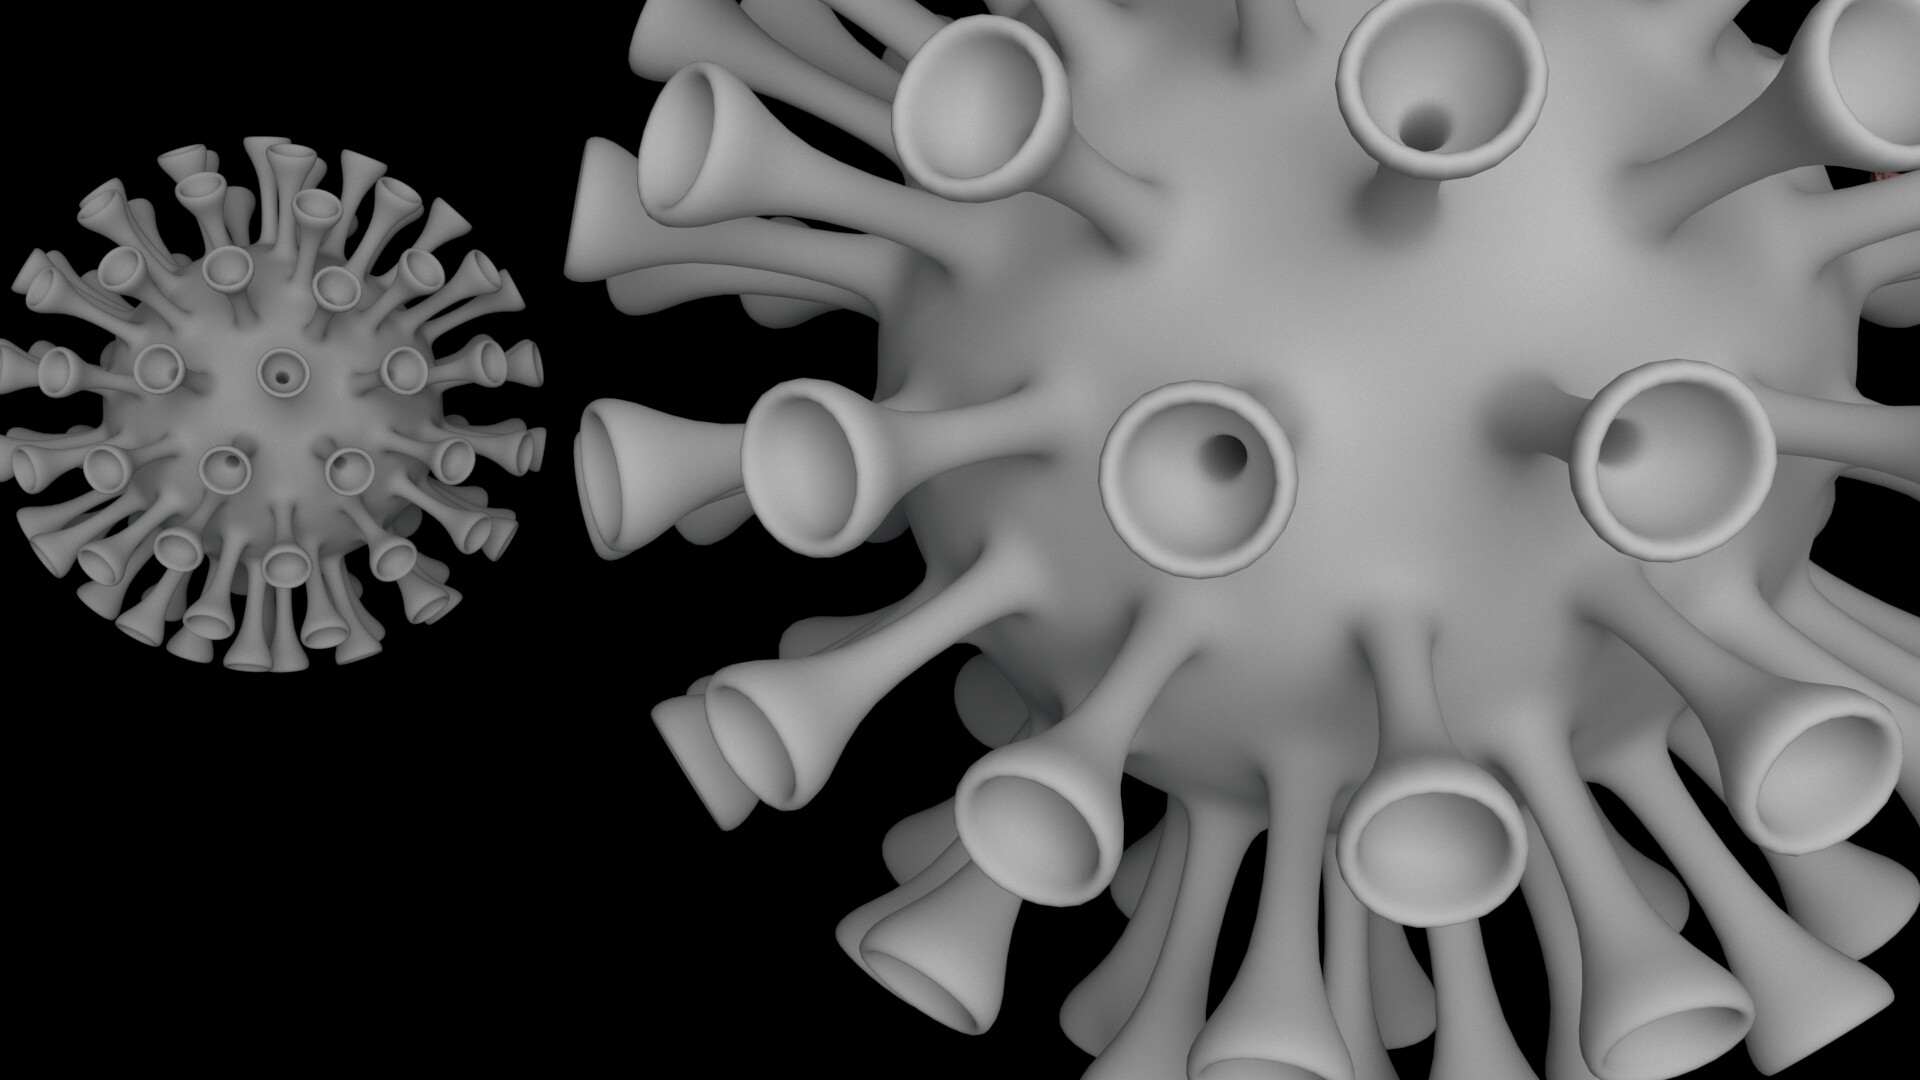 Để hiểu rõ hơn về coronavirus, hãy xem những hình ảnh 3D modeling được thực hiện với kỹ thuật tuyệt vời. Xem cách virus tàn phá các tế bào khỏe mạnh và cách tăng cường kháng thể cho cơ thể.